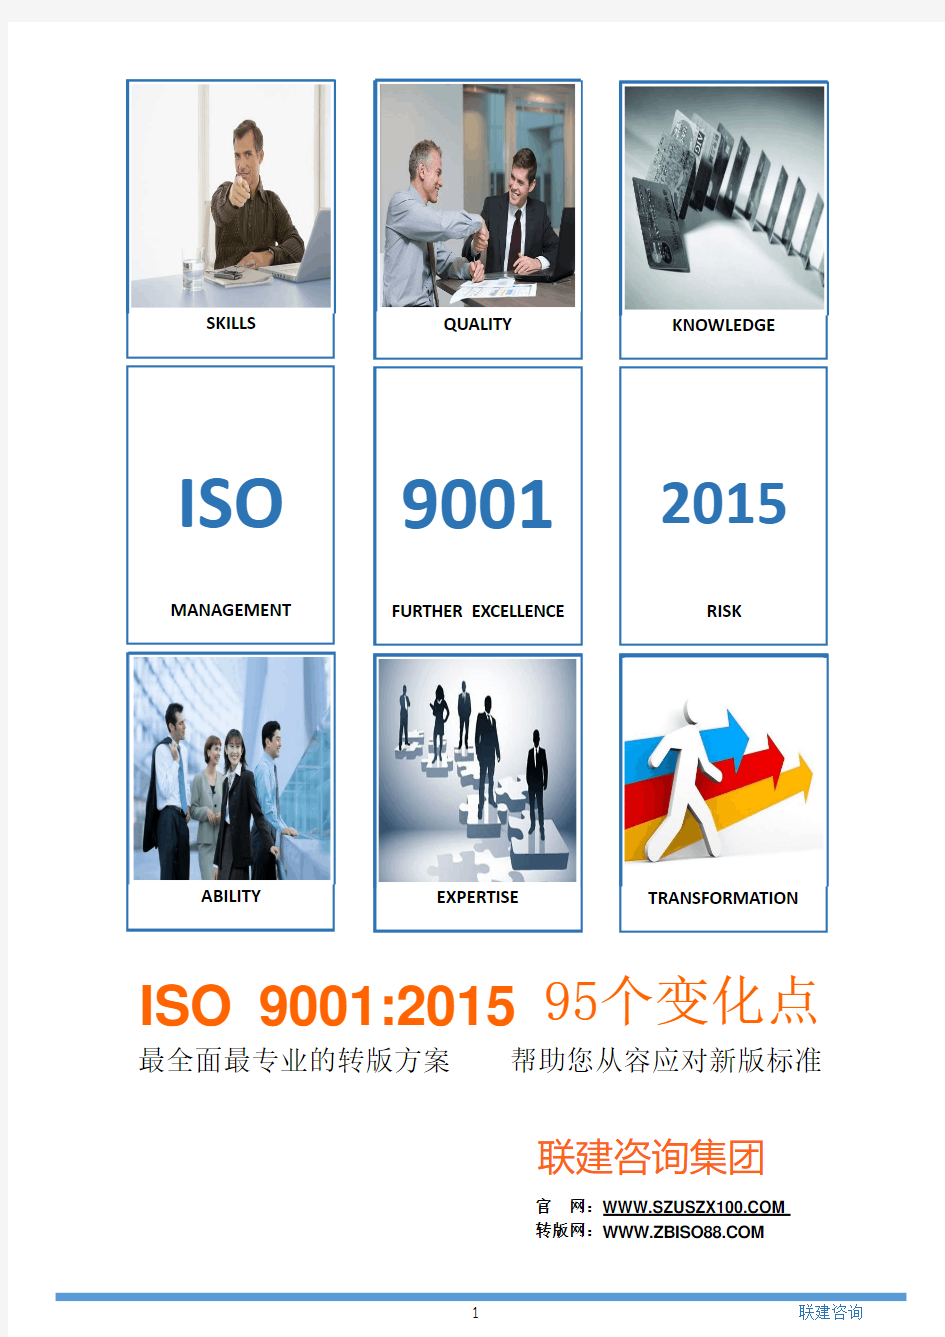 新版ISO 90012015  95个变化点